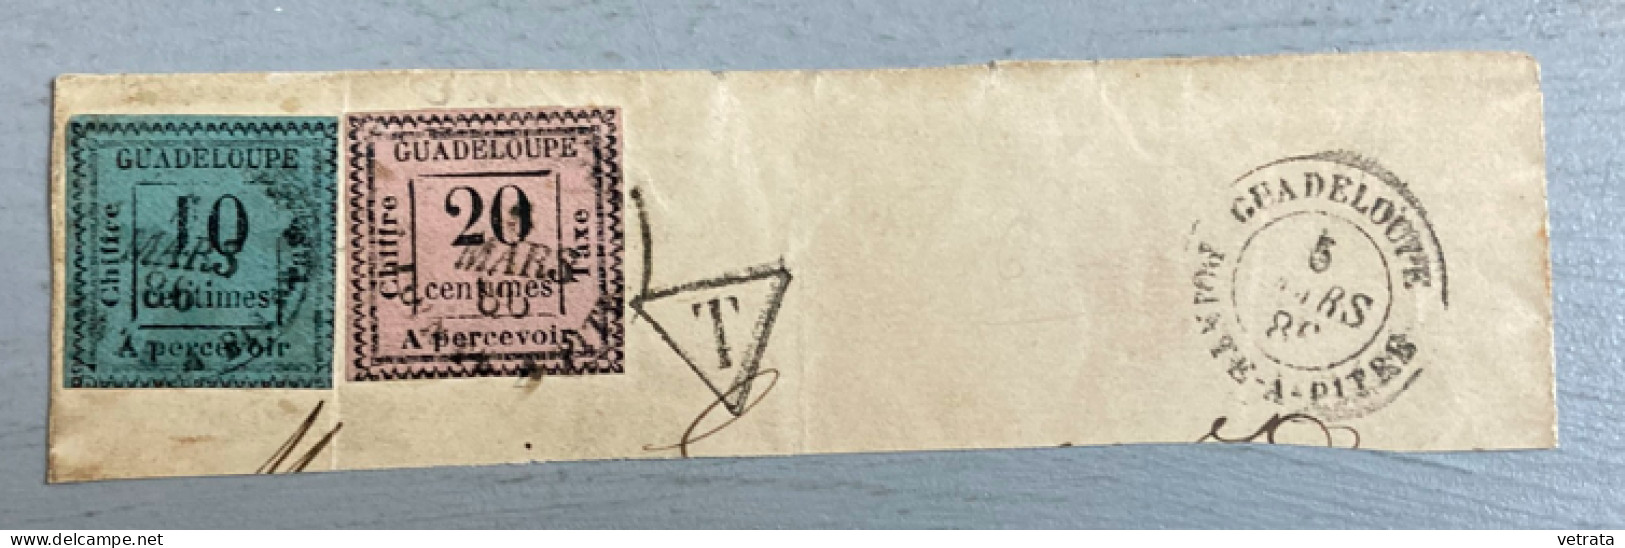 2 Timbres Guadeloupe Oblitérés 1886 (10 & 20 Centimes - à Percevoir) Sur Coin D’enveloppe) - Antillen